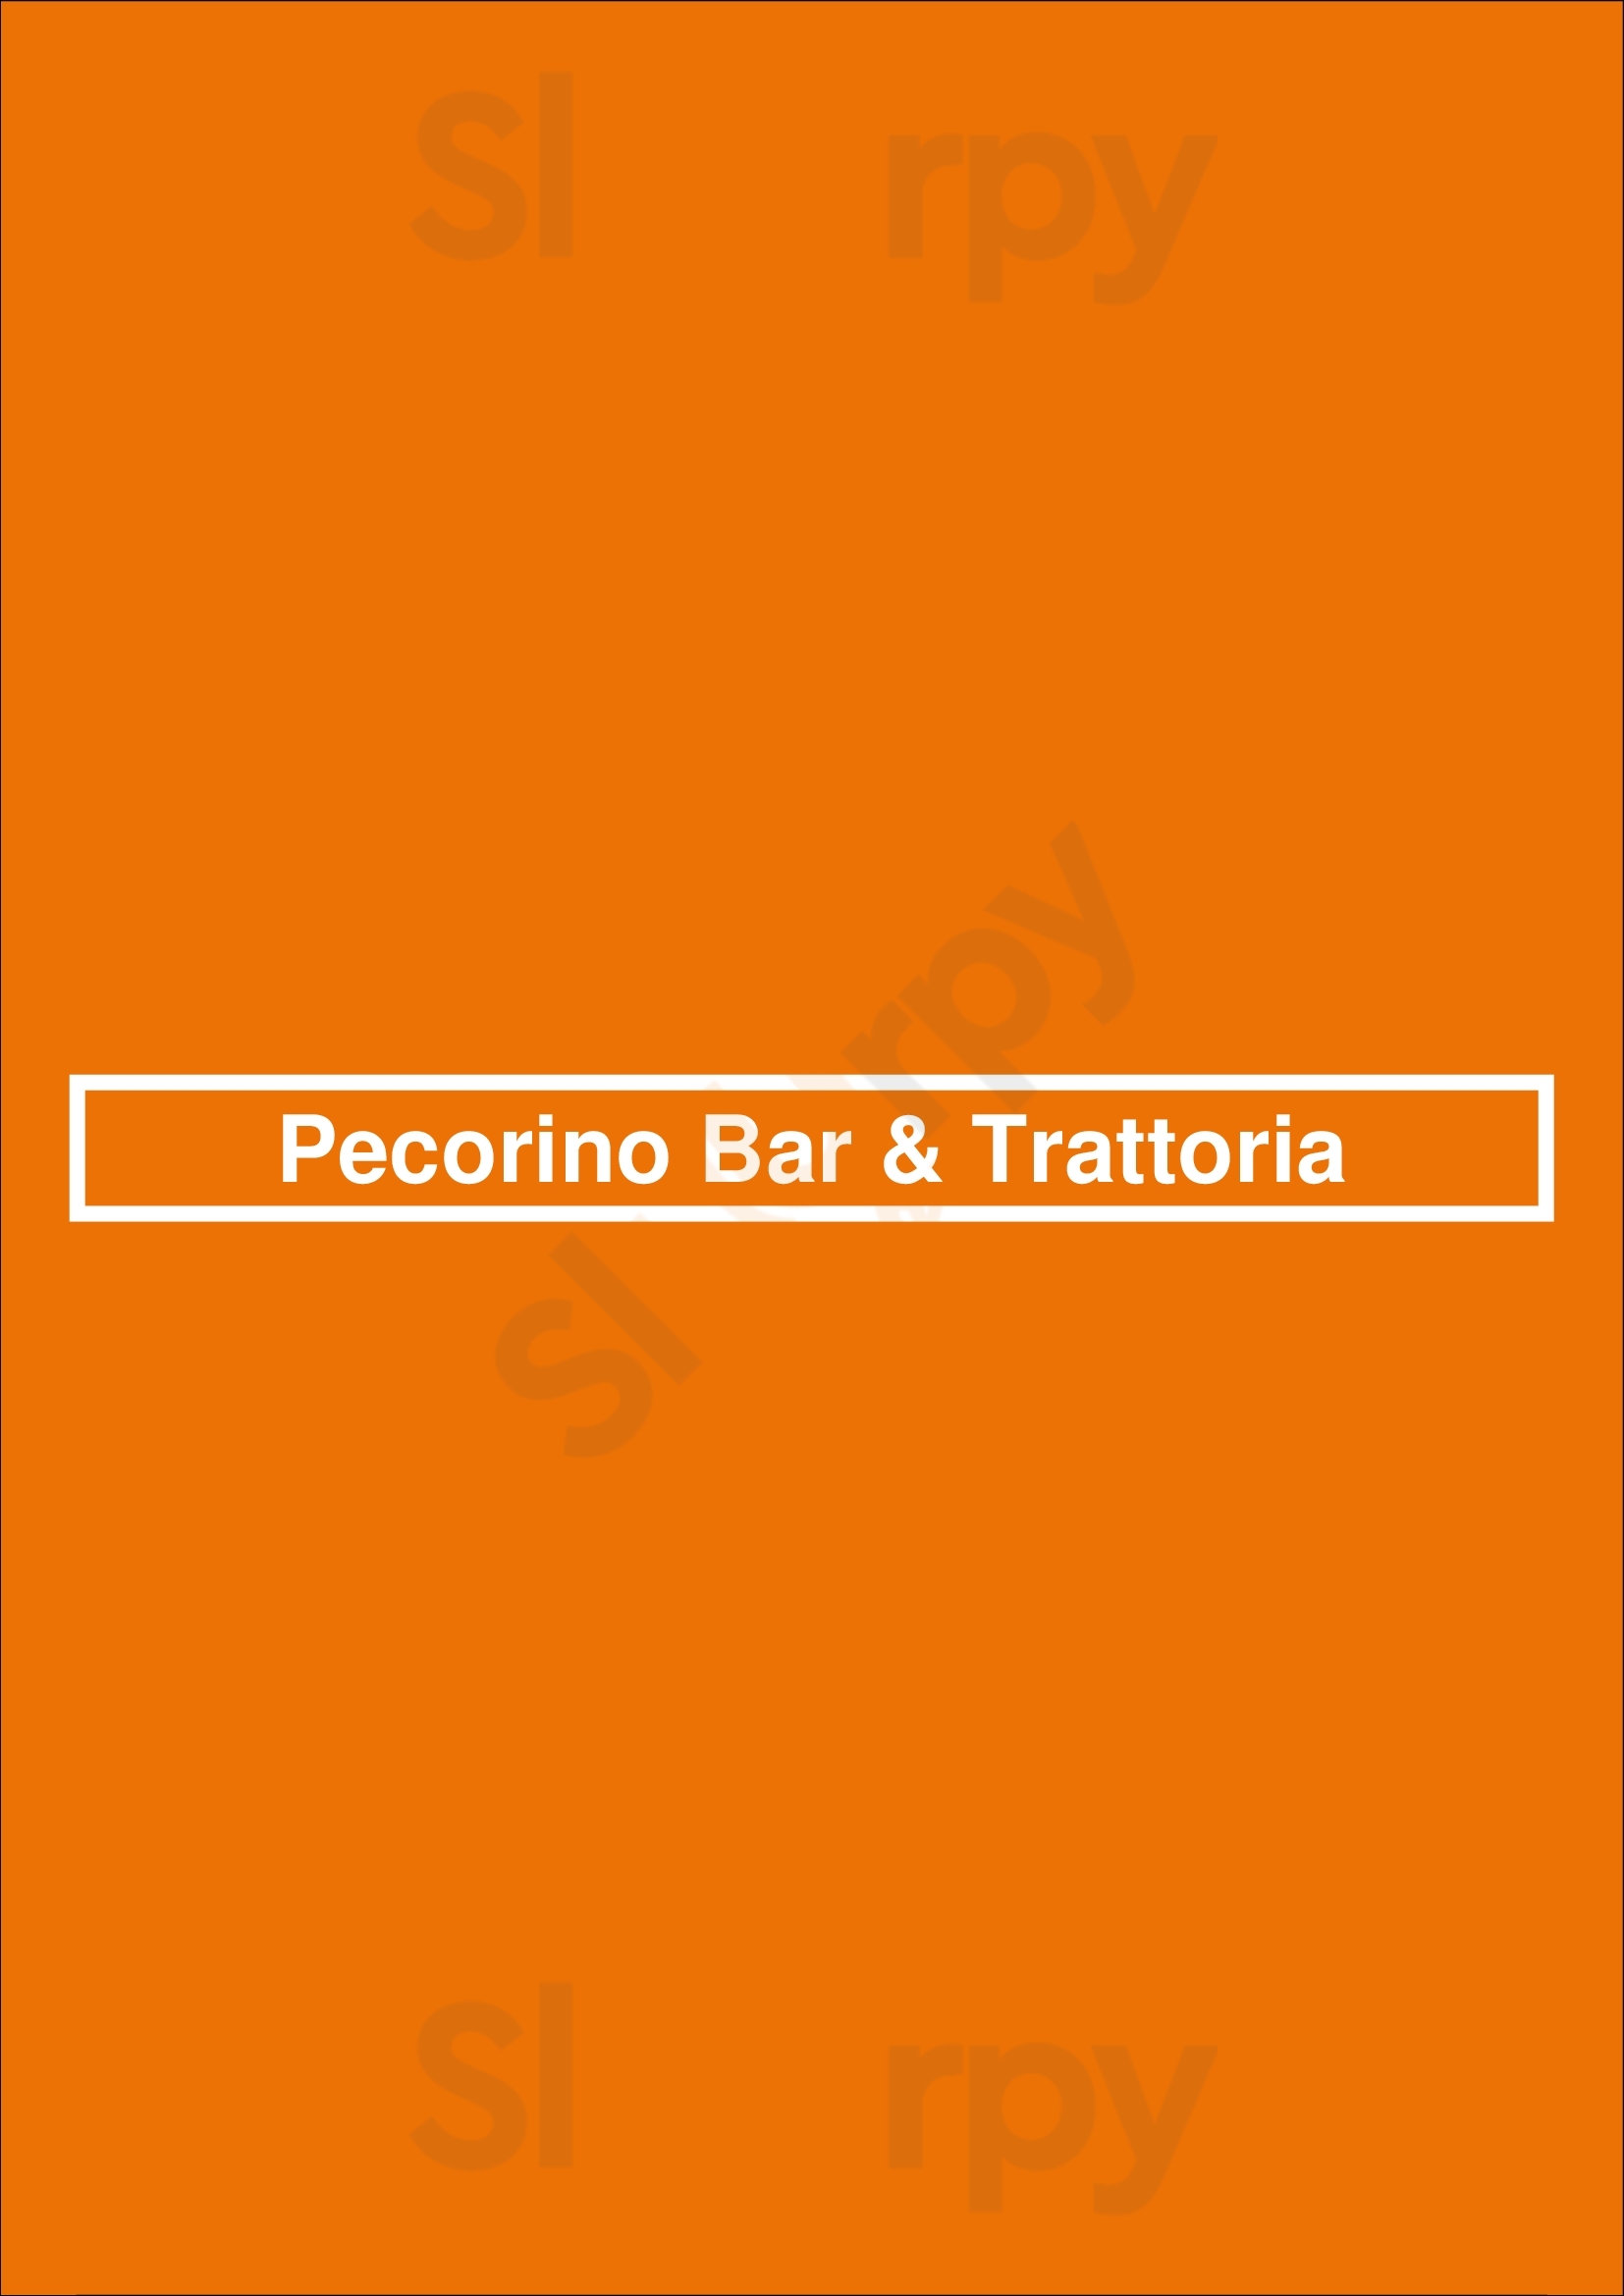 Pecorino Bar & Trattoria Barueri Menu - 1